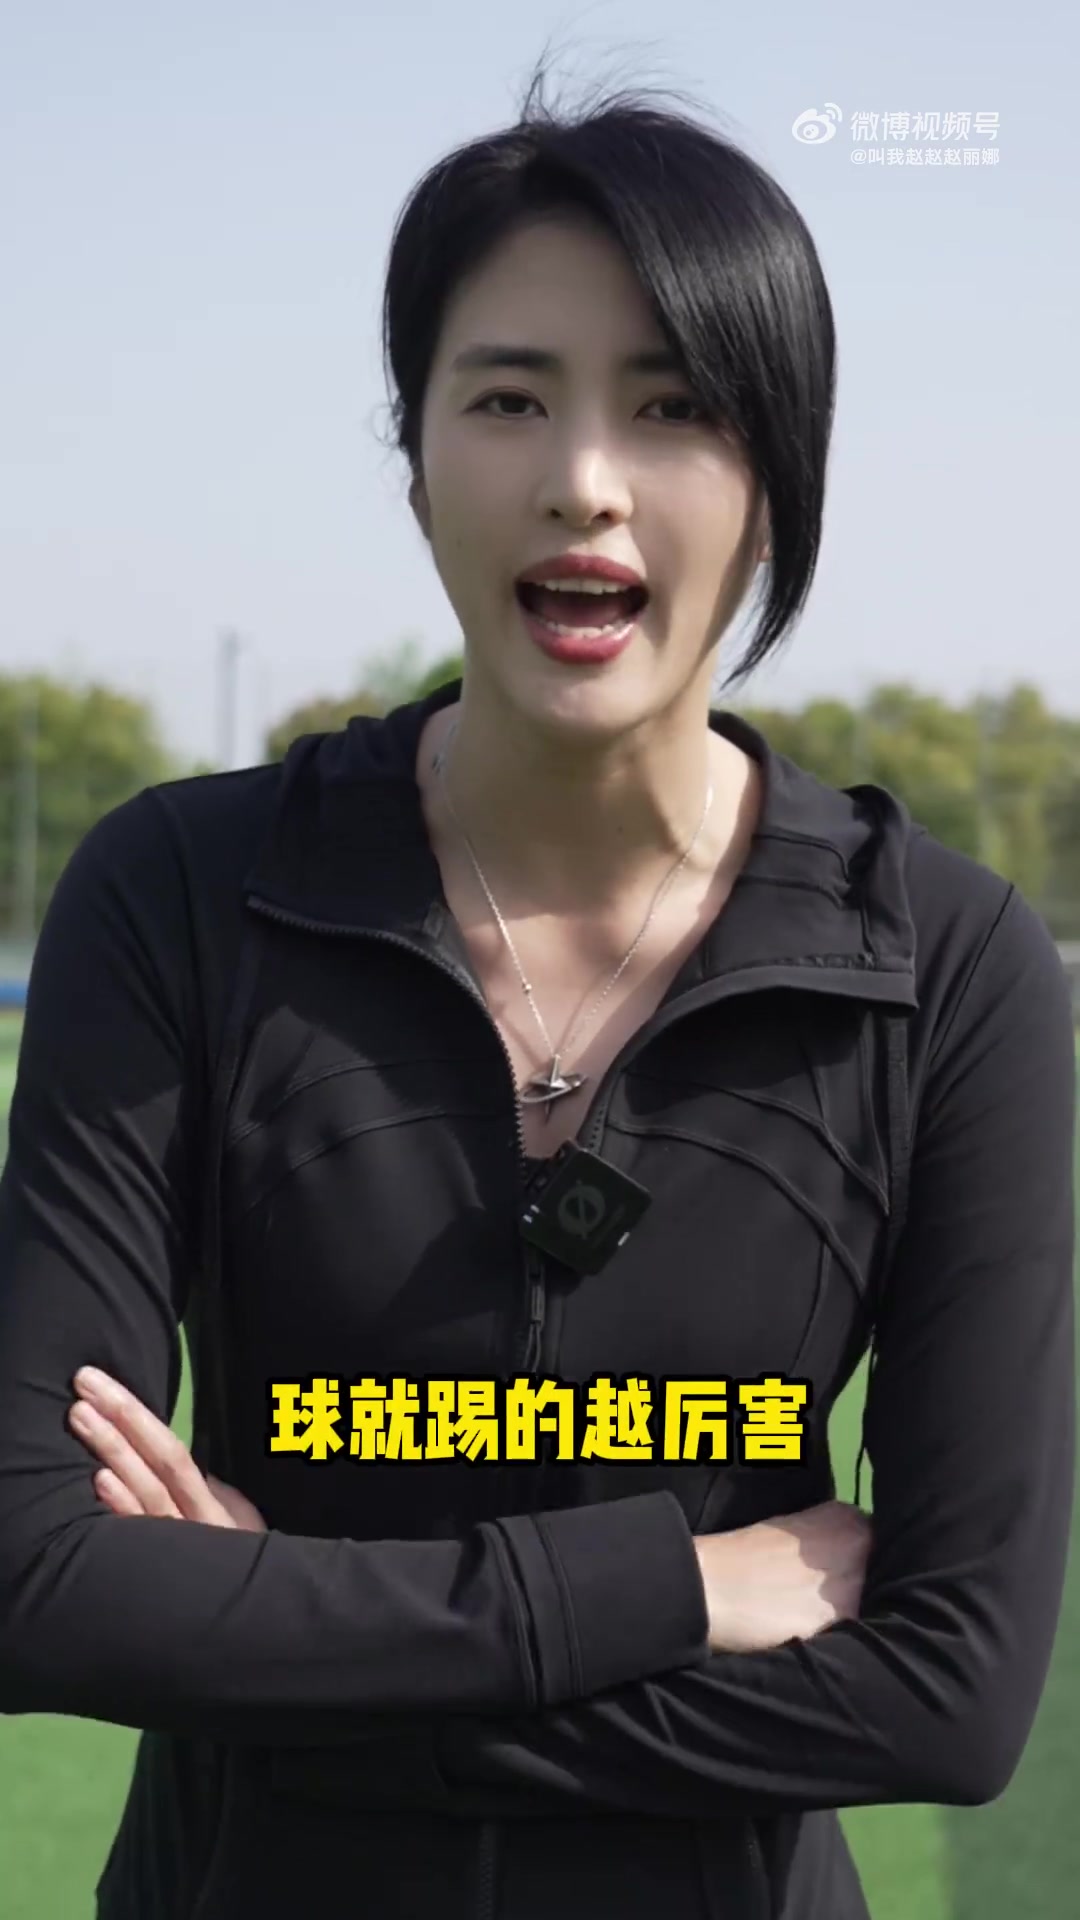 你学会了吗？赵丽娜晒颠球教学视频：和我一起来学颠球吧！